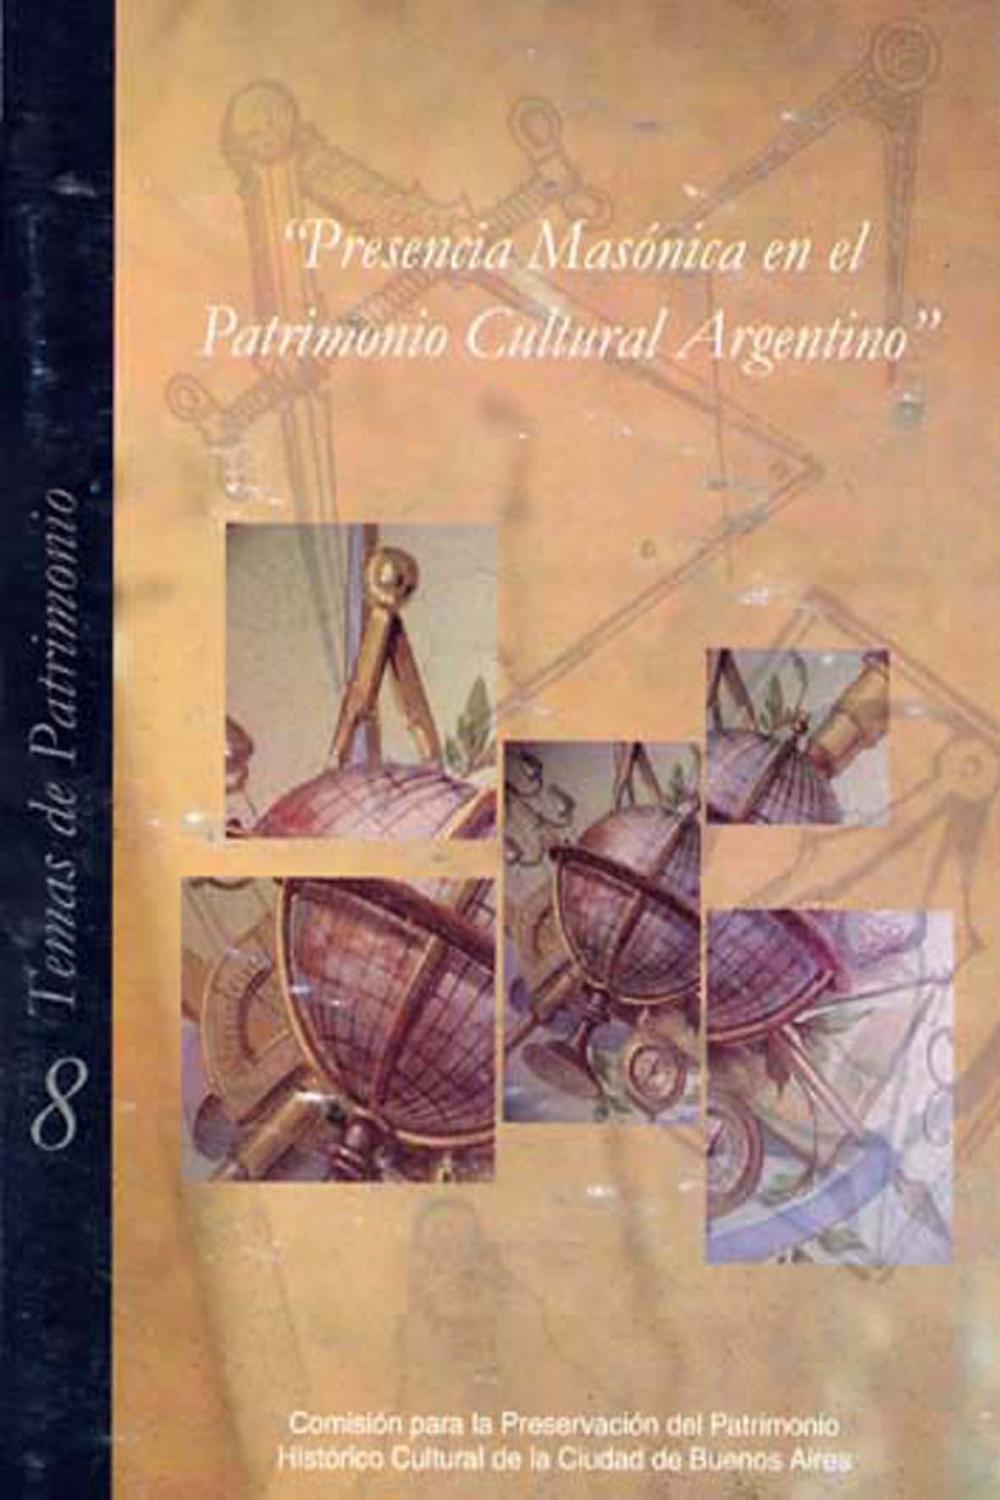 Presencia masonica en el patrimonio cultural argentino.-- ( Temas de patrimonio cultural ; 8 ) - Hernandez, Eduardo - Maronese, Leticia -